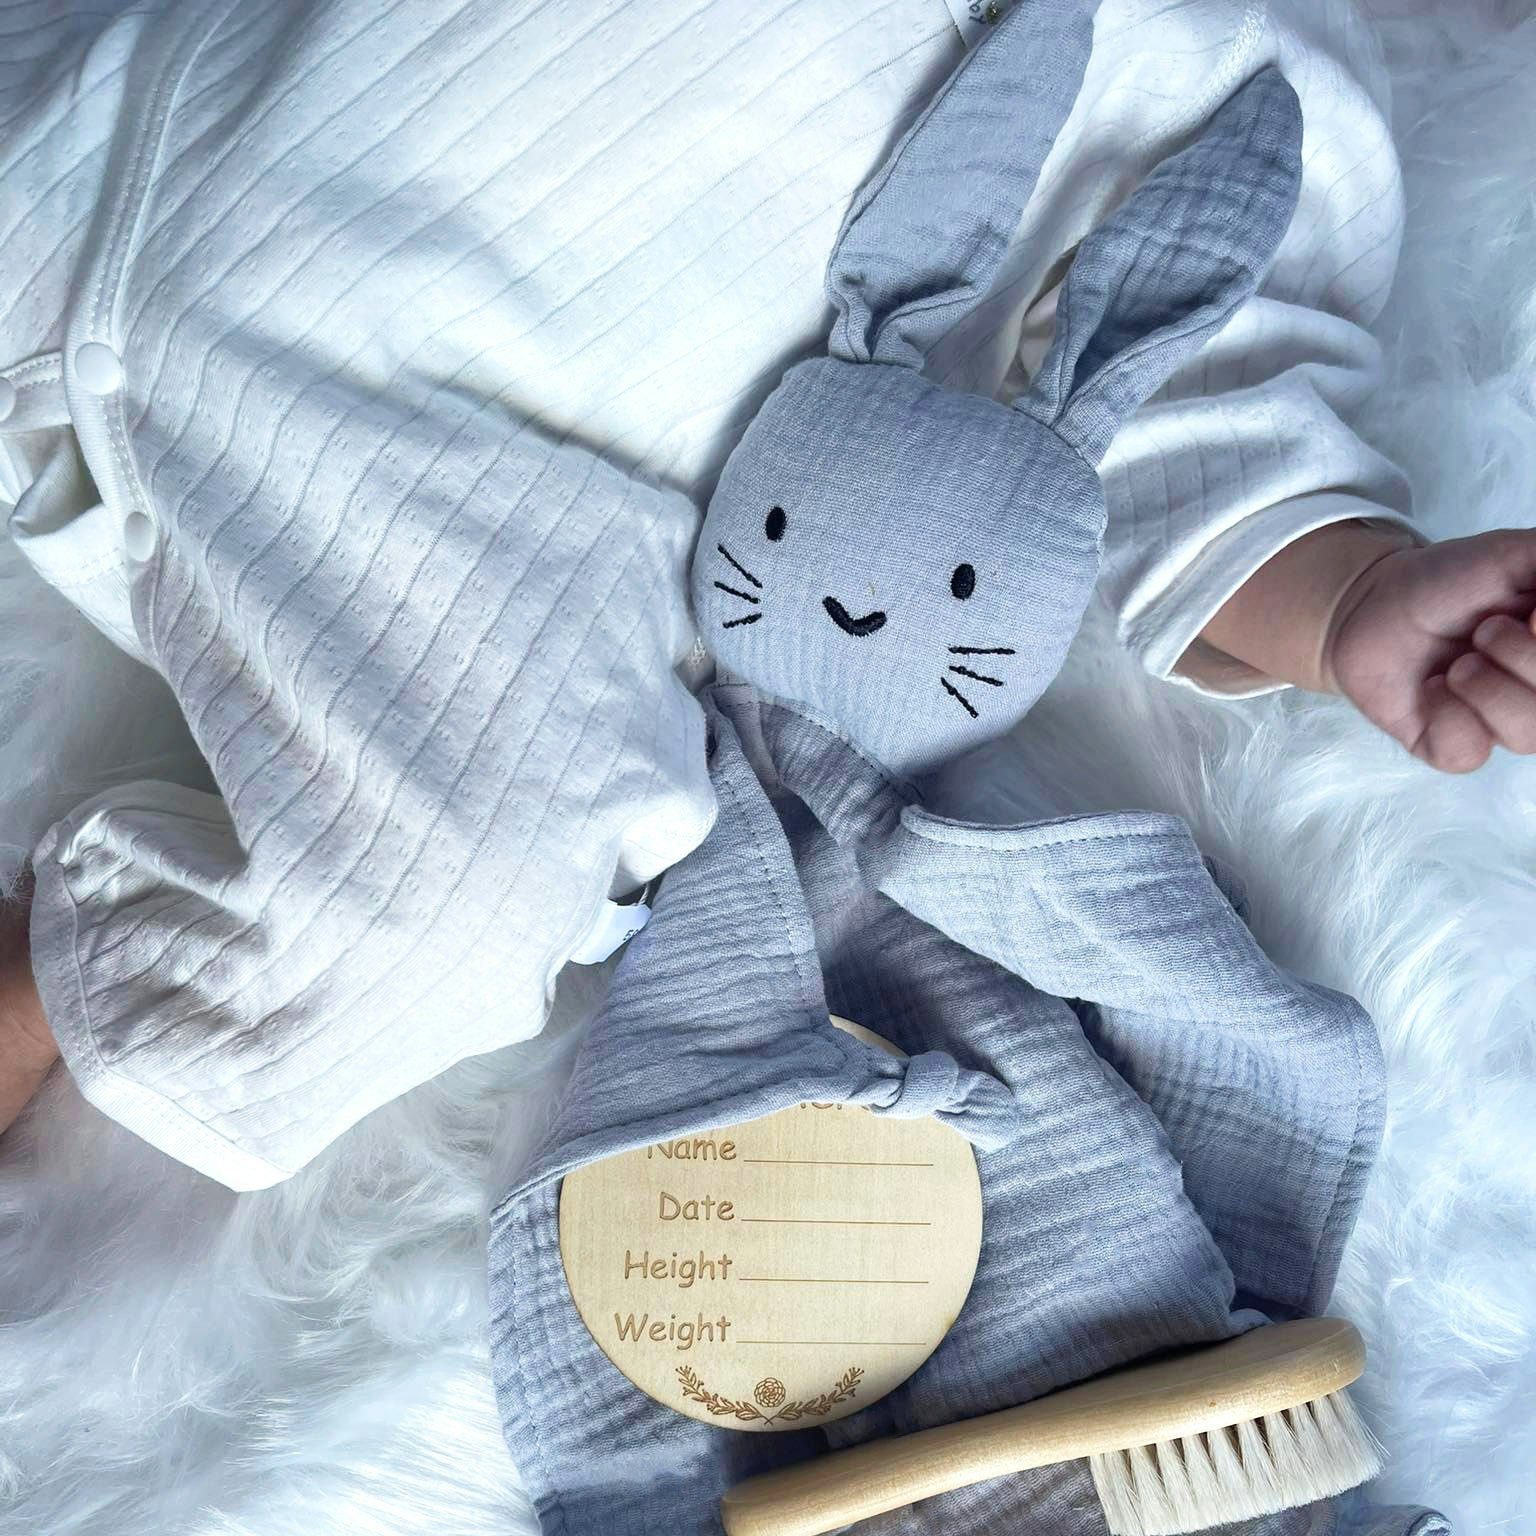 Angel's Baby Neugeborenen-Geschenkset Babyrassel + Teile zur 5 Grußkarte, niedlichem gratis Blau mit Design mit Schnuffeltuch, Geschenkverpackung Geschenk in Baumwolle, Geburtskarte) Beige und 5-tlg., (Set, Geburt